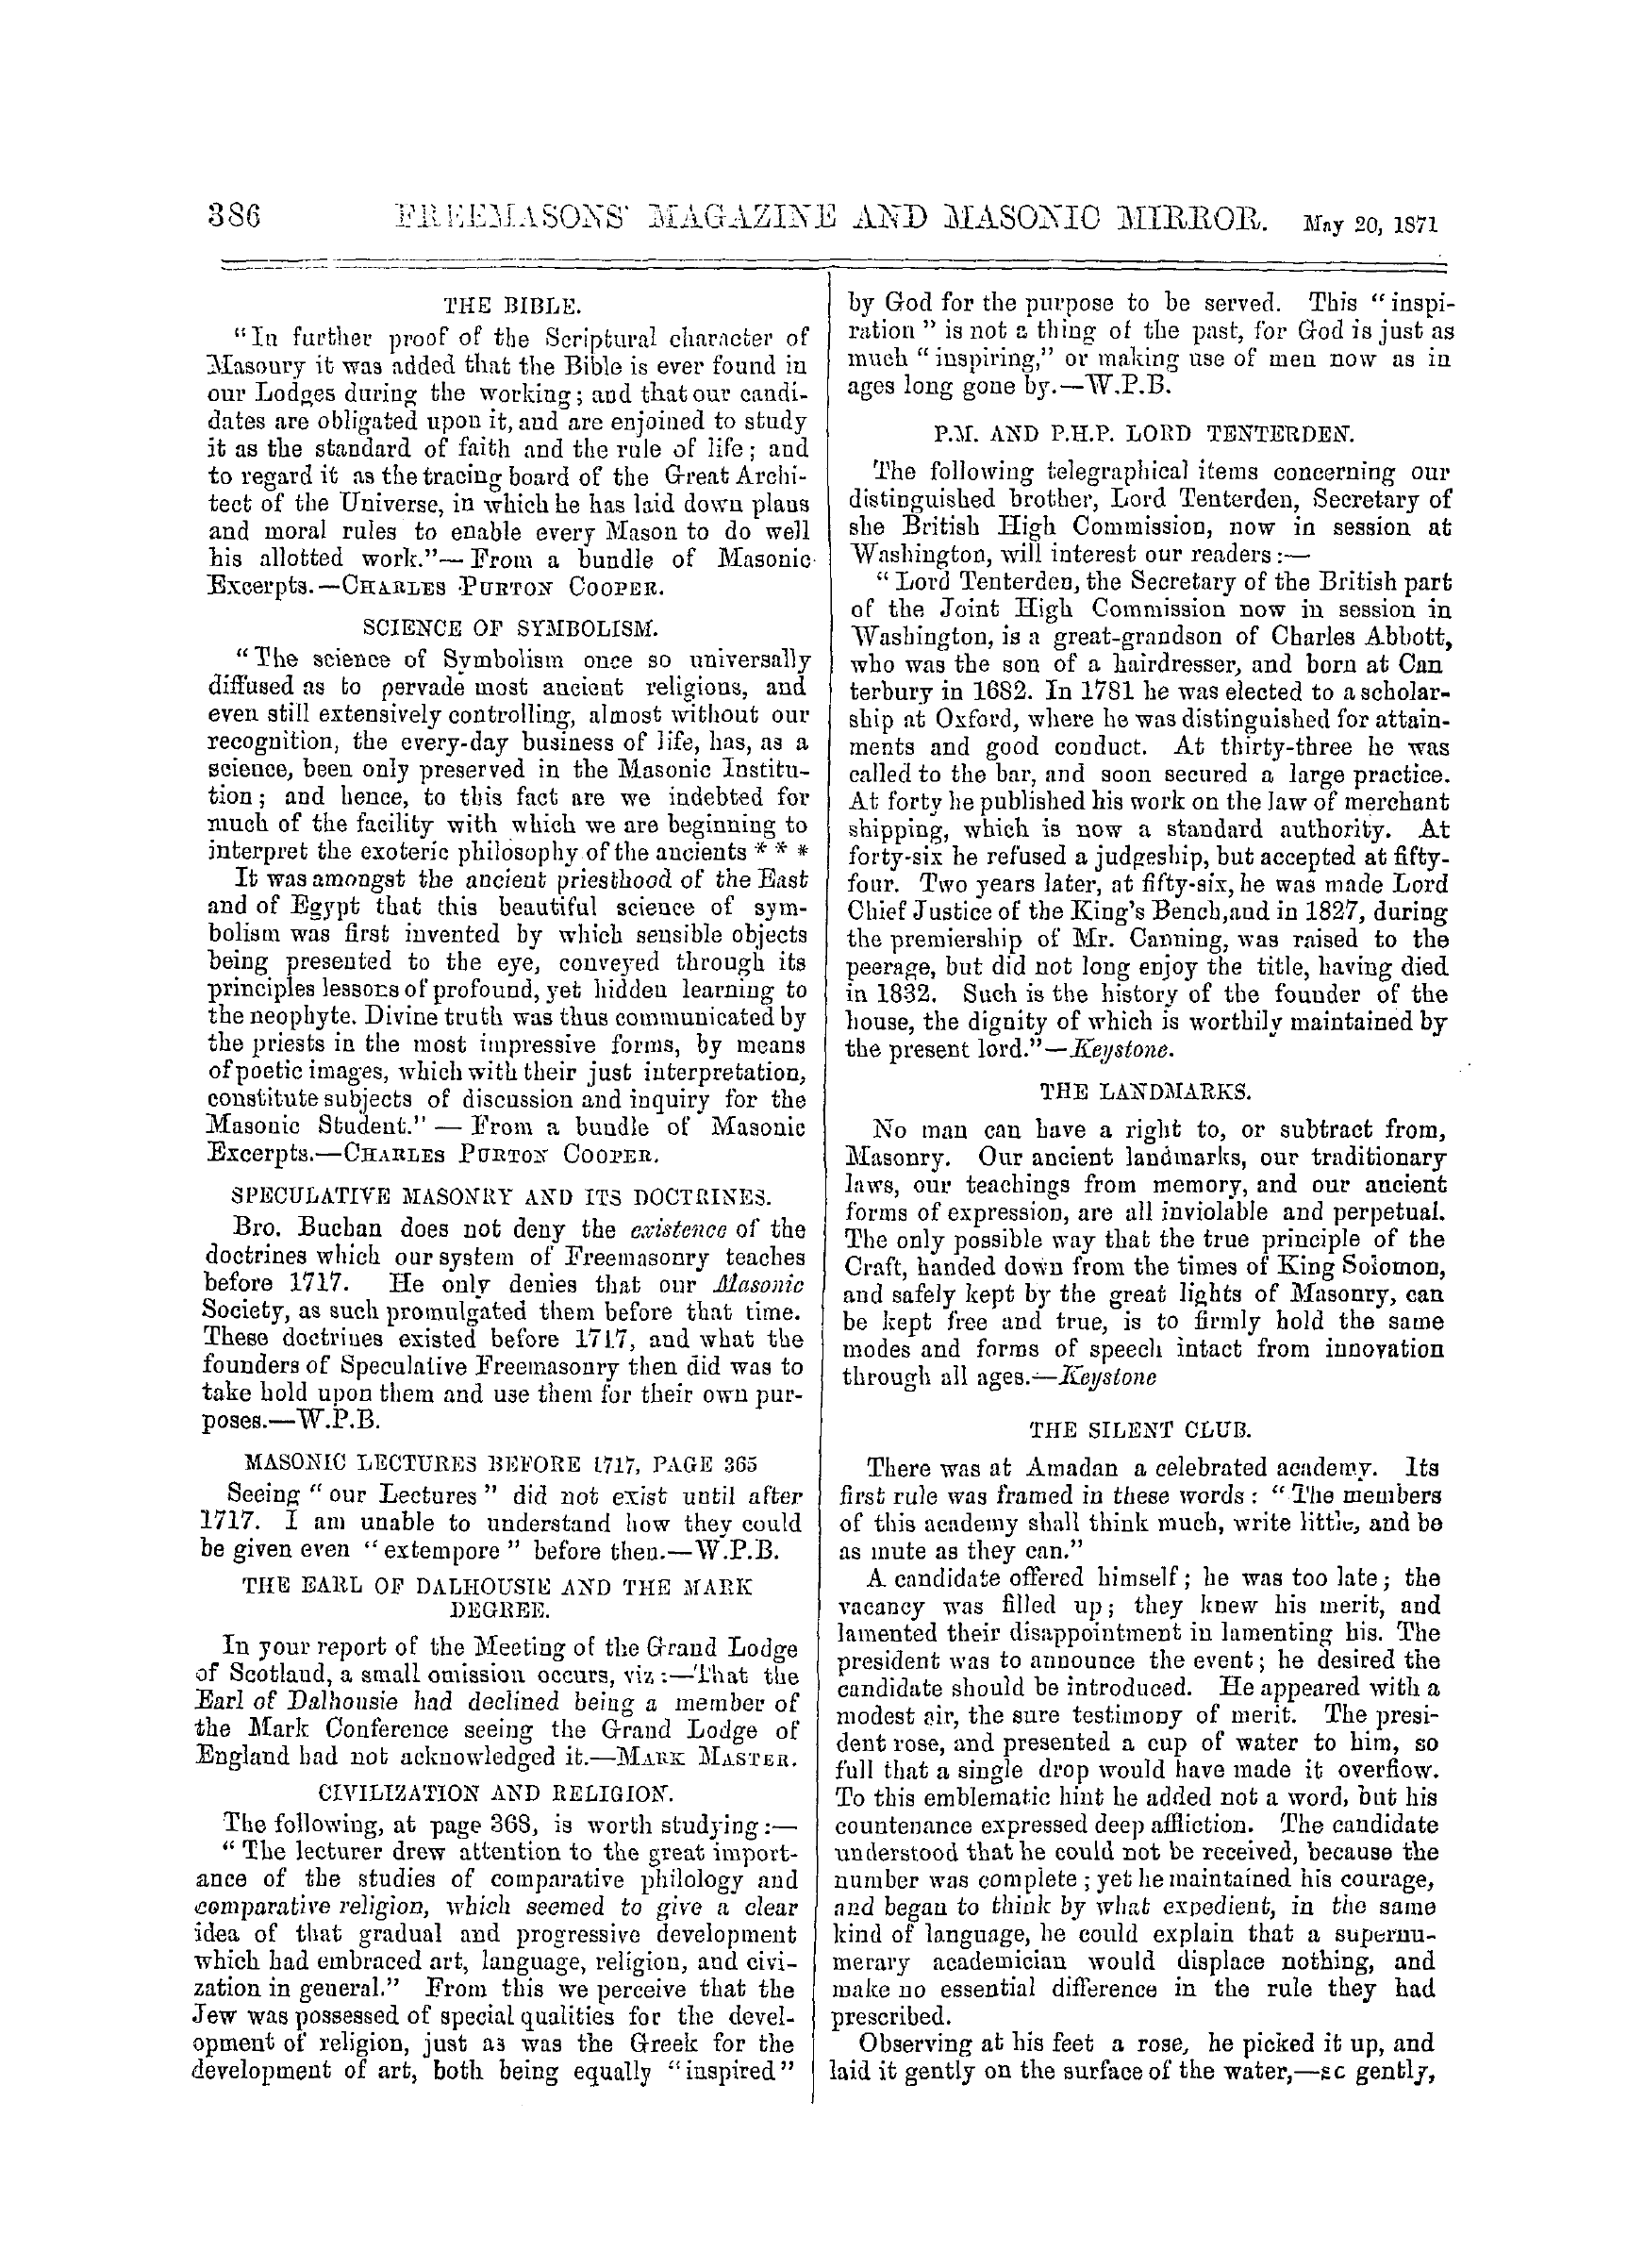 The Freemasons' Monthly Magazine: 1871-05-20: 6